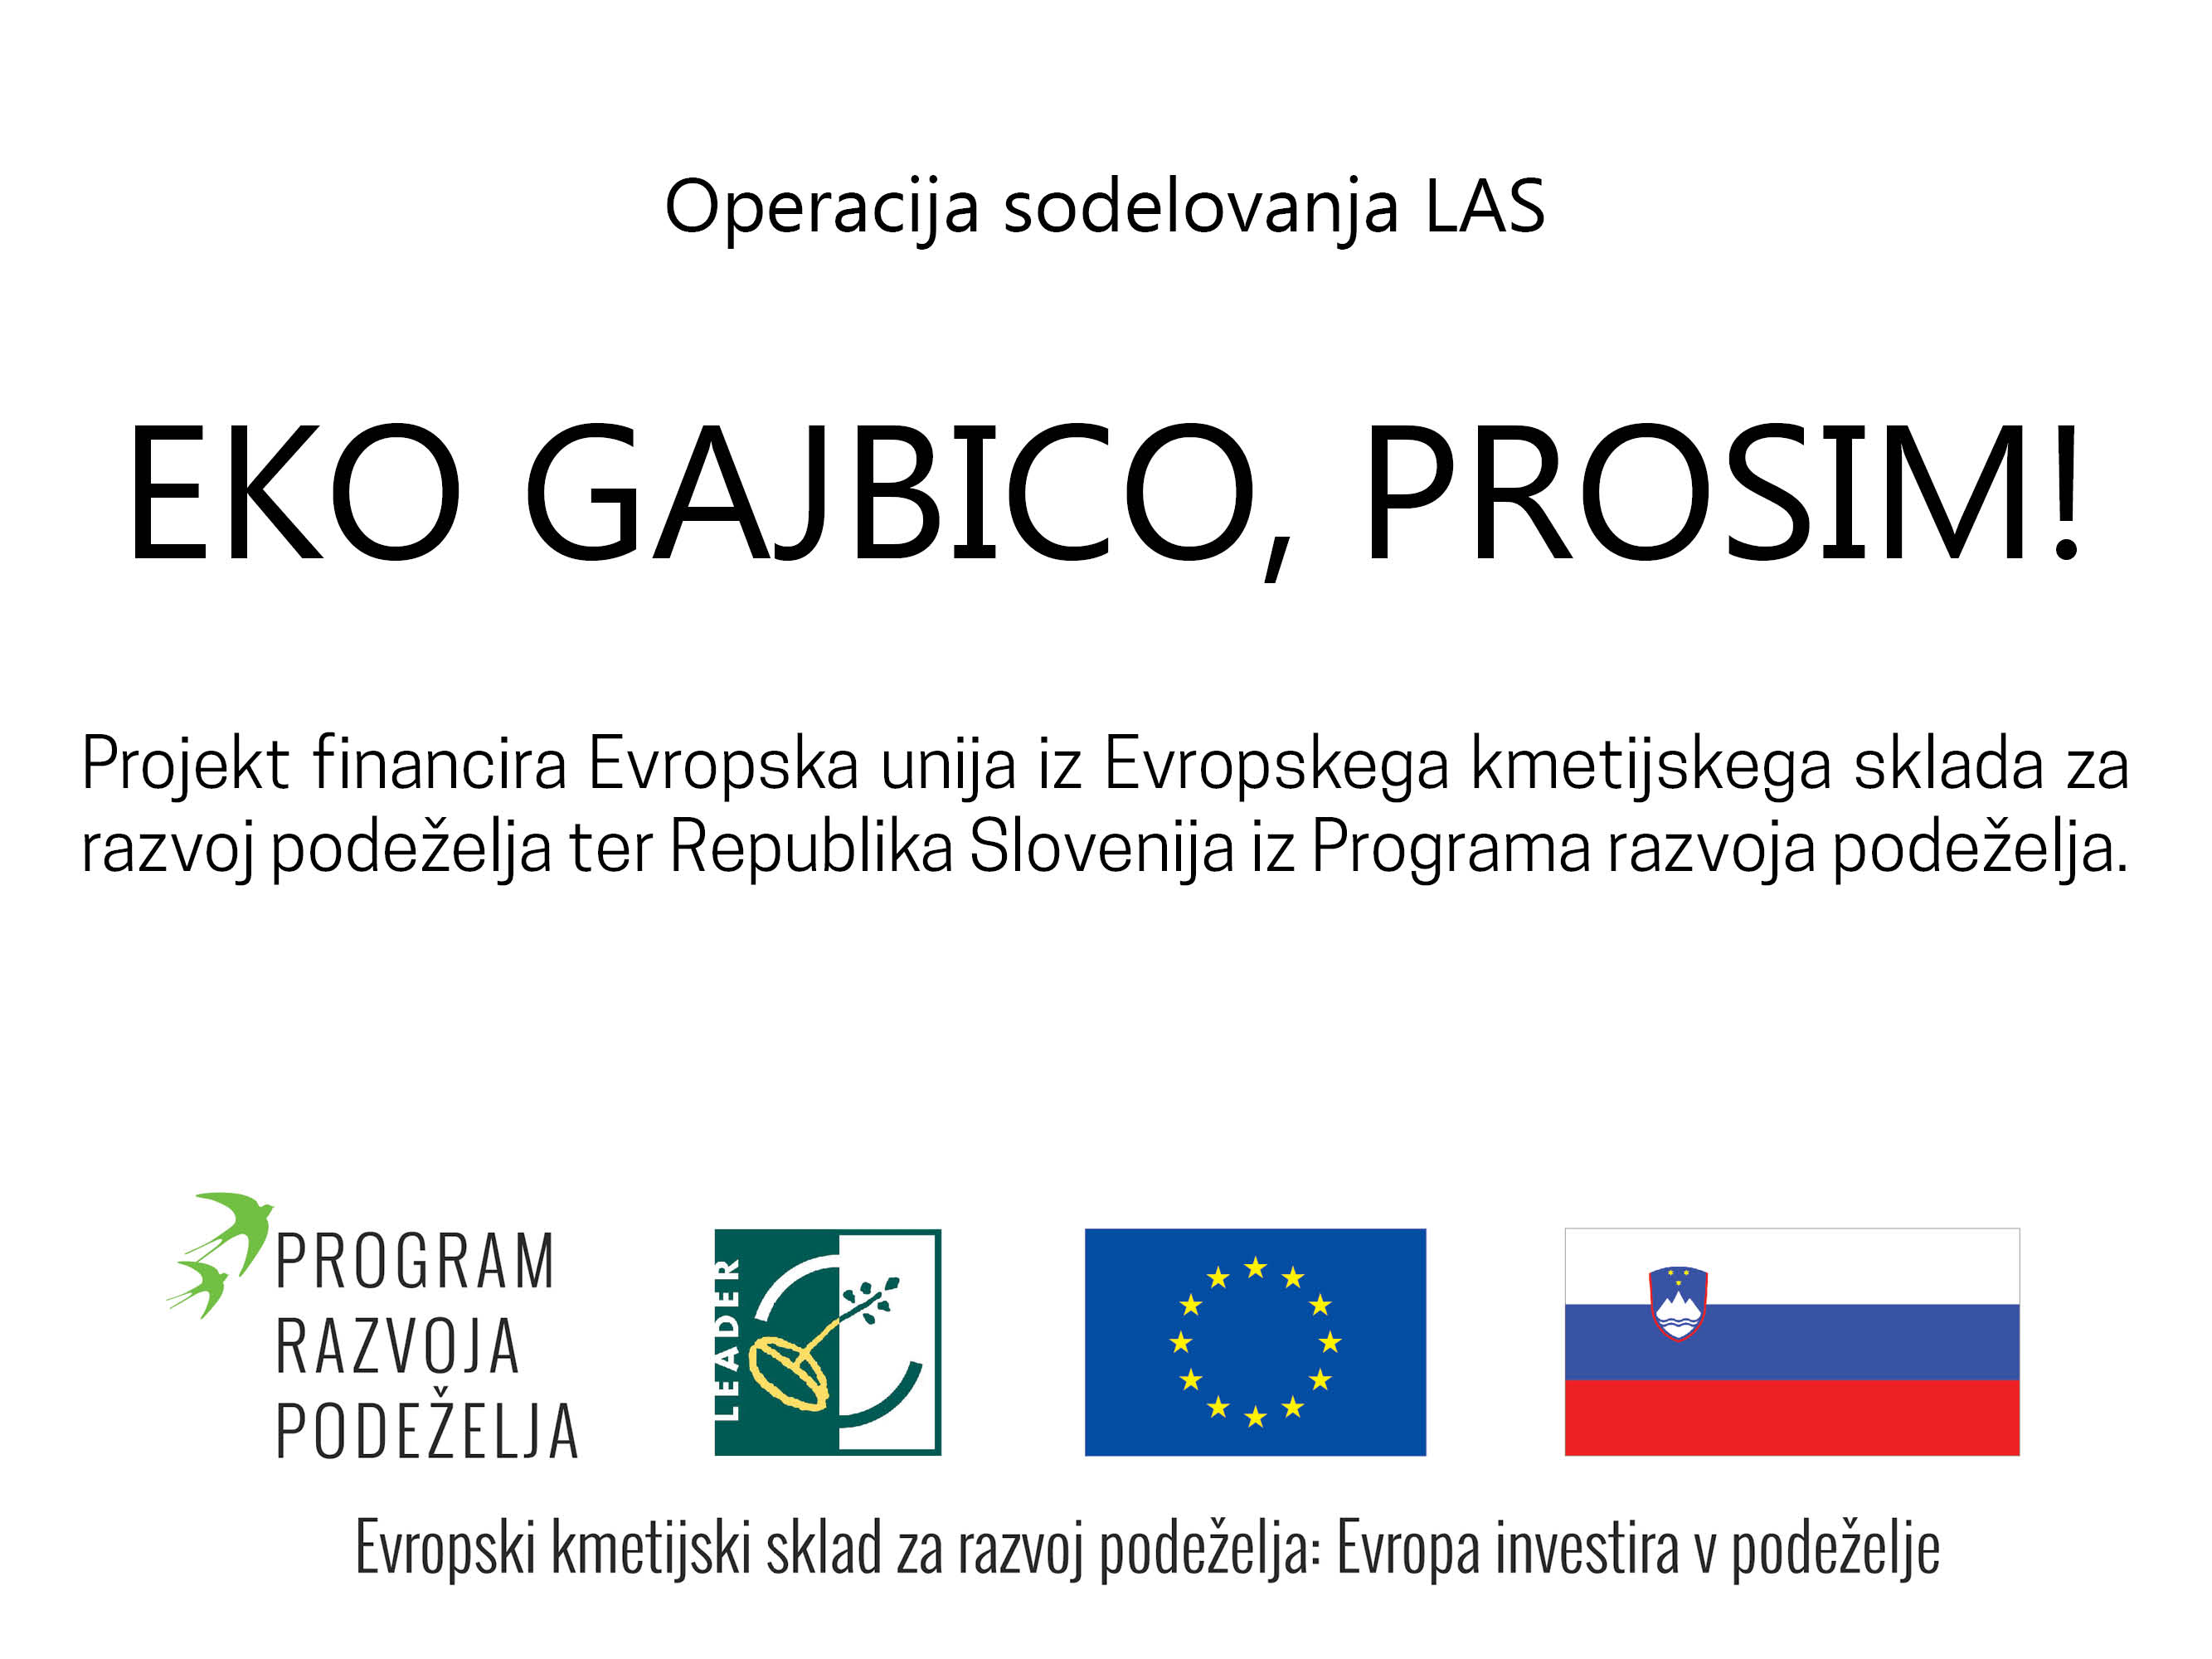 LAS projekt: Eko gajbico, prosim!